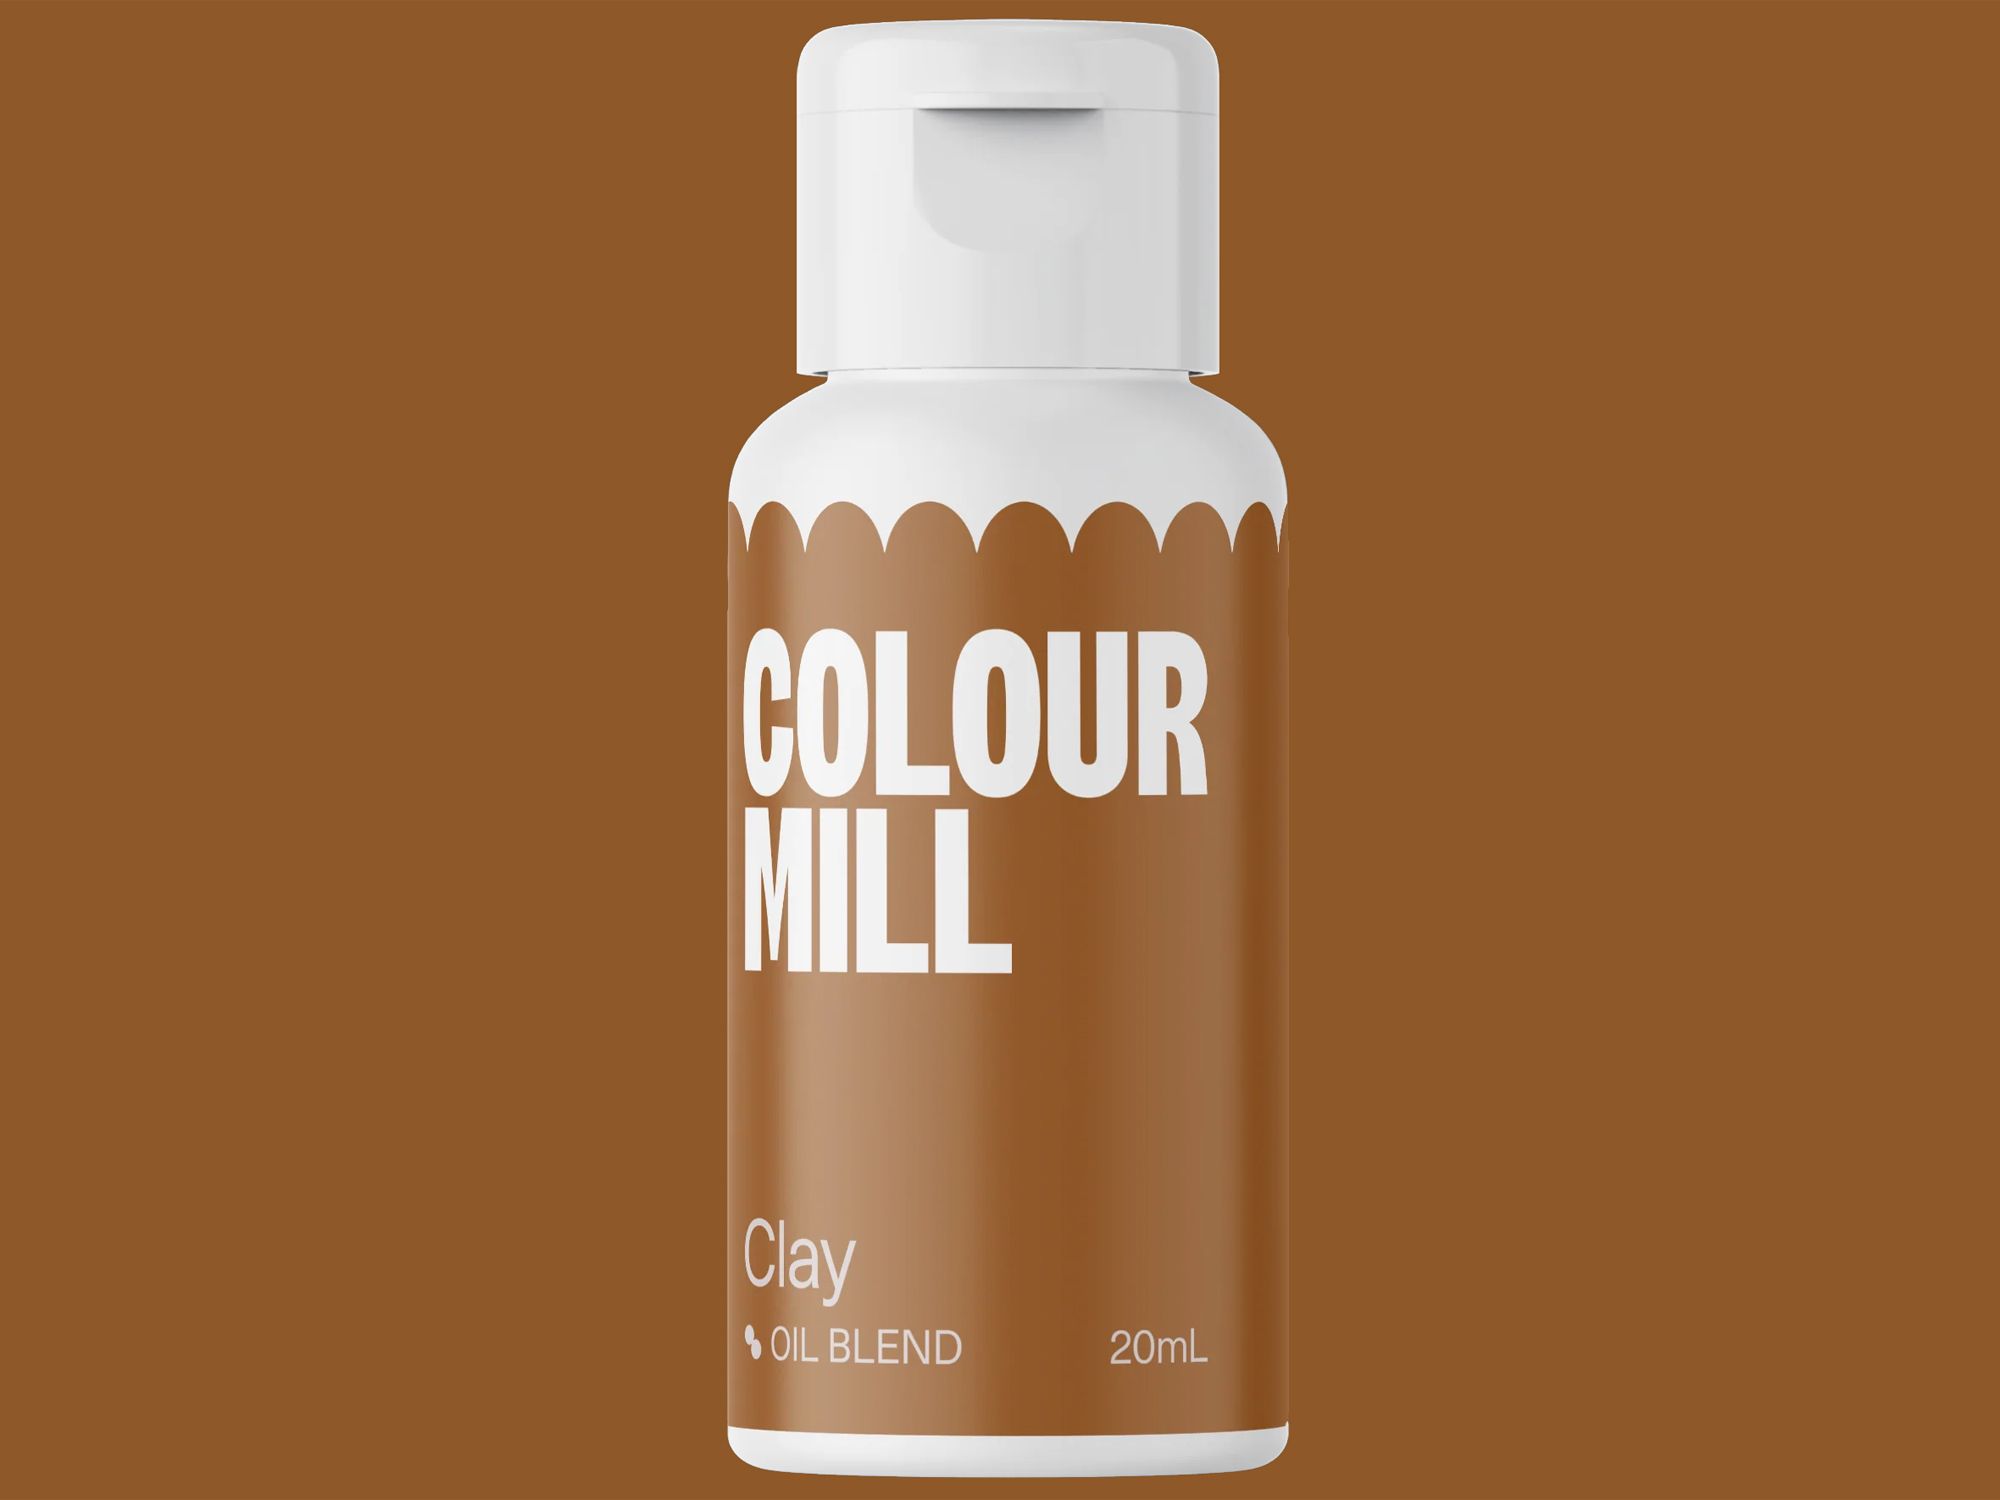 Colour Mill Clay (Oil Blend) 20ml